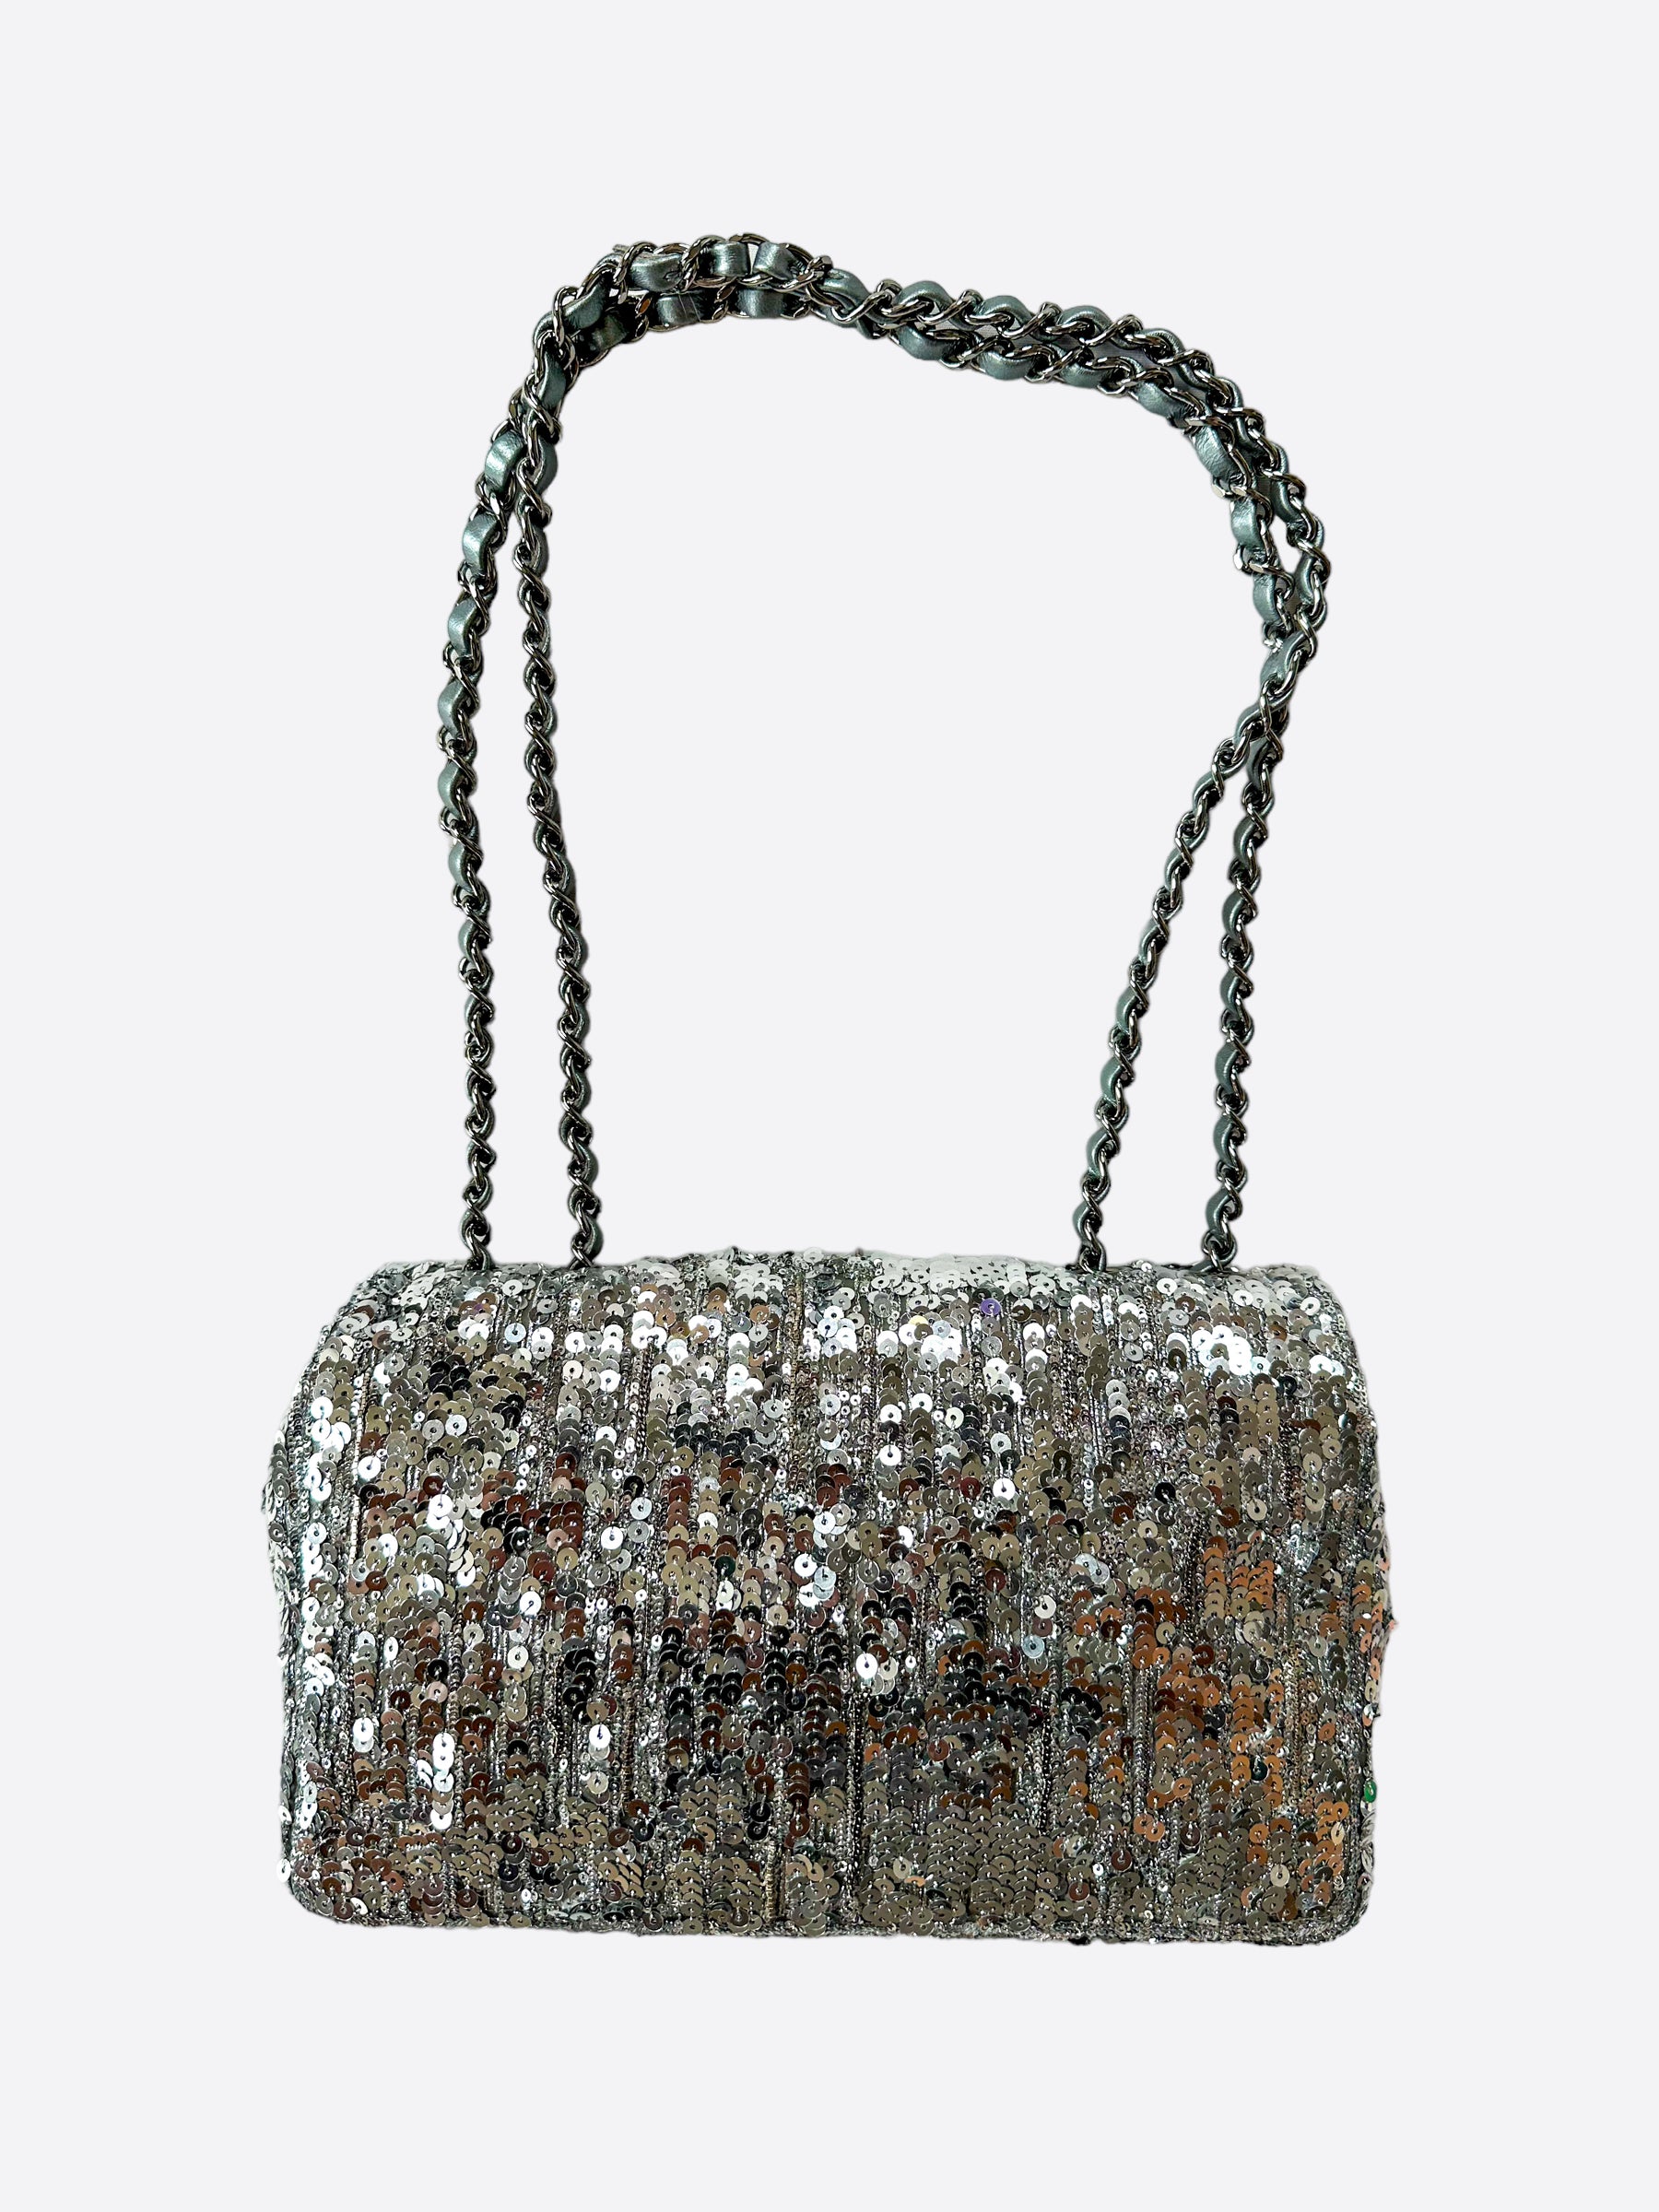 chanel silver handbag